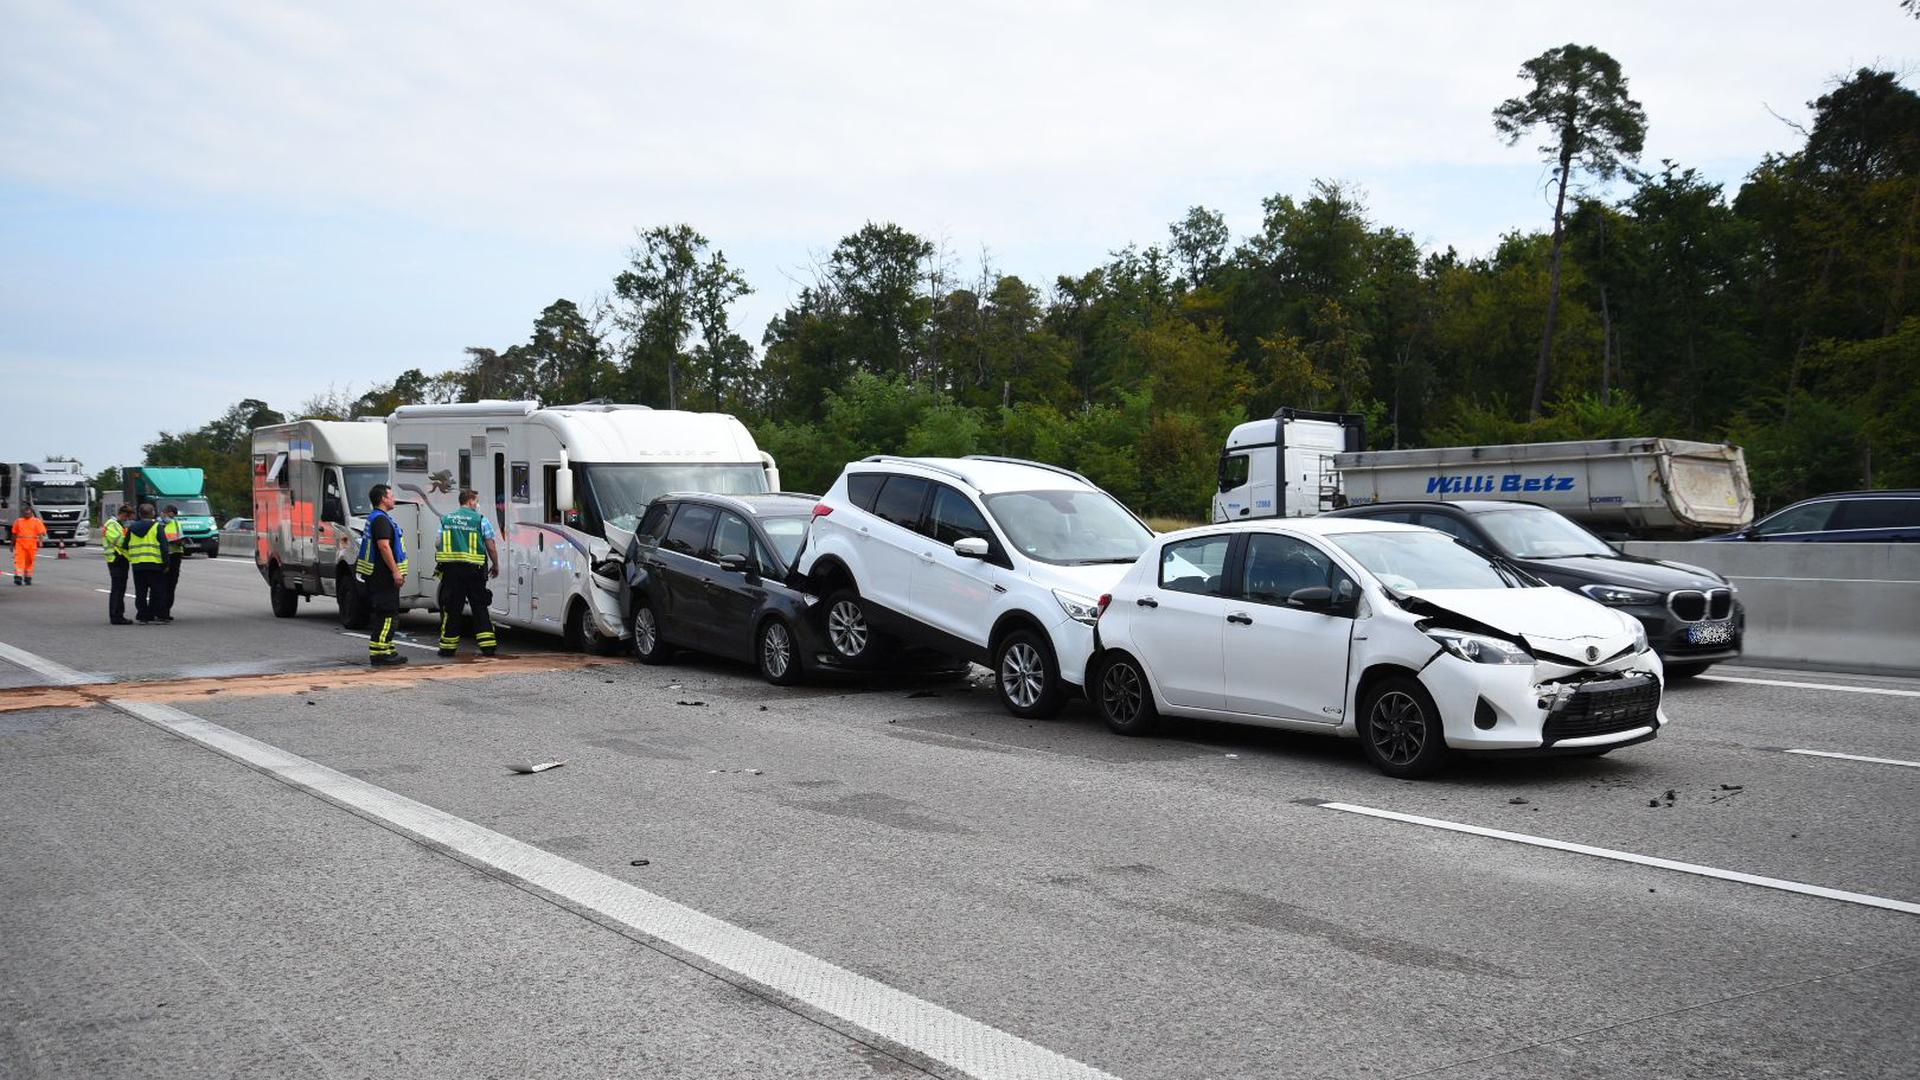 Massenkarambolage auf der A5 bei Kronau: sieben Fahrzeuge beteiligt